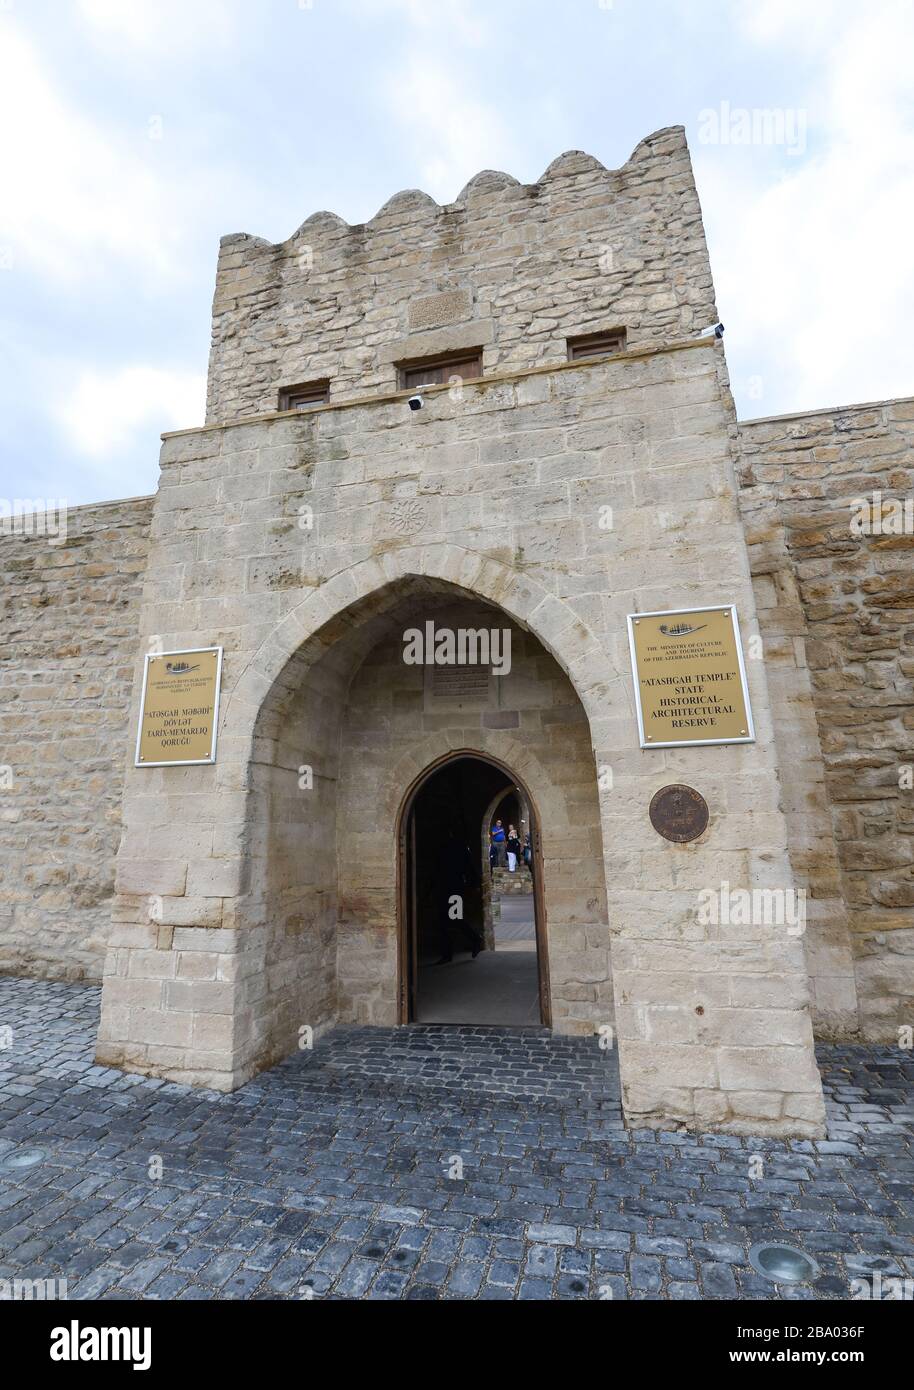 Eingangstor des Ateshgah-Tempels staatliches historisches Architekturreservat, in dem Zoroastrianismus und hinduismus praktiziert wurden. Feuertempel in Aserbaidschan. Stockfoto